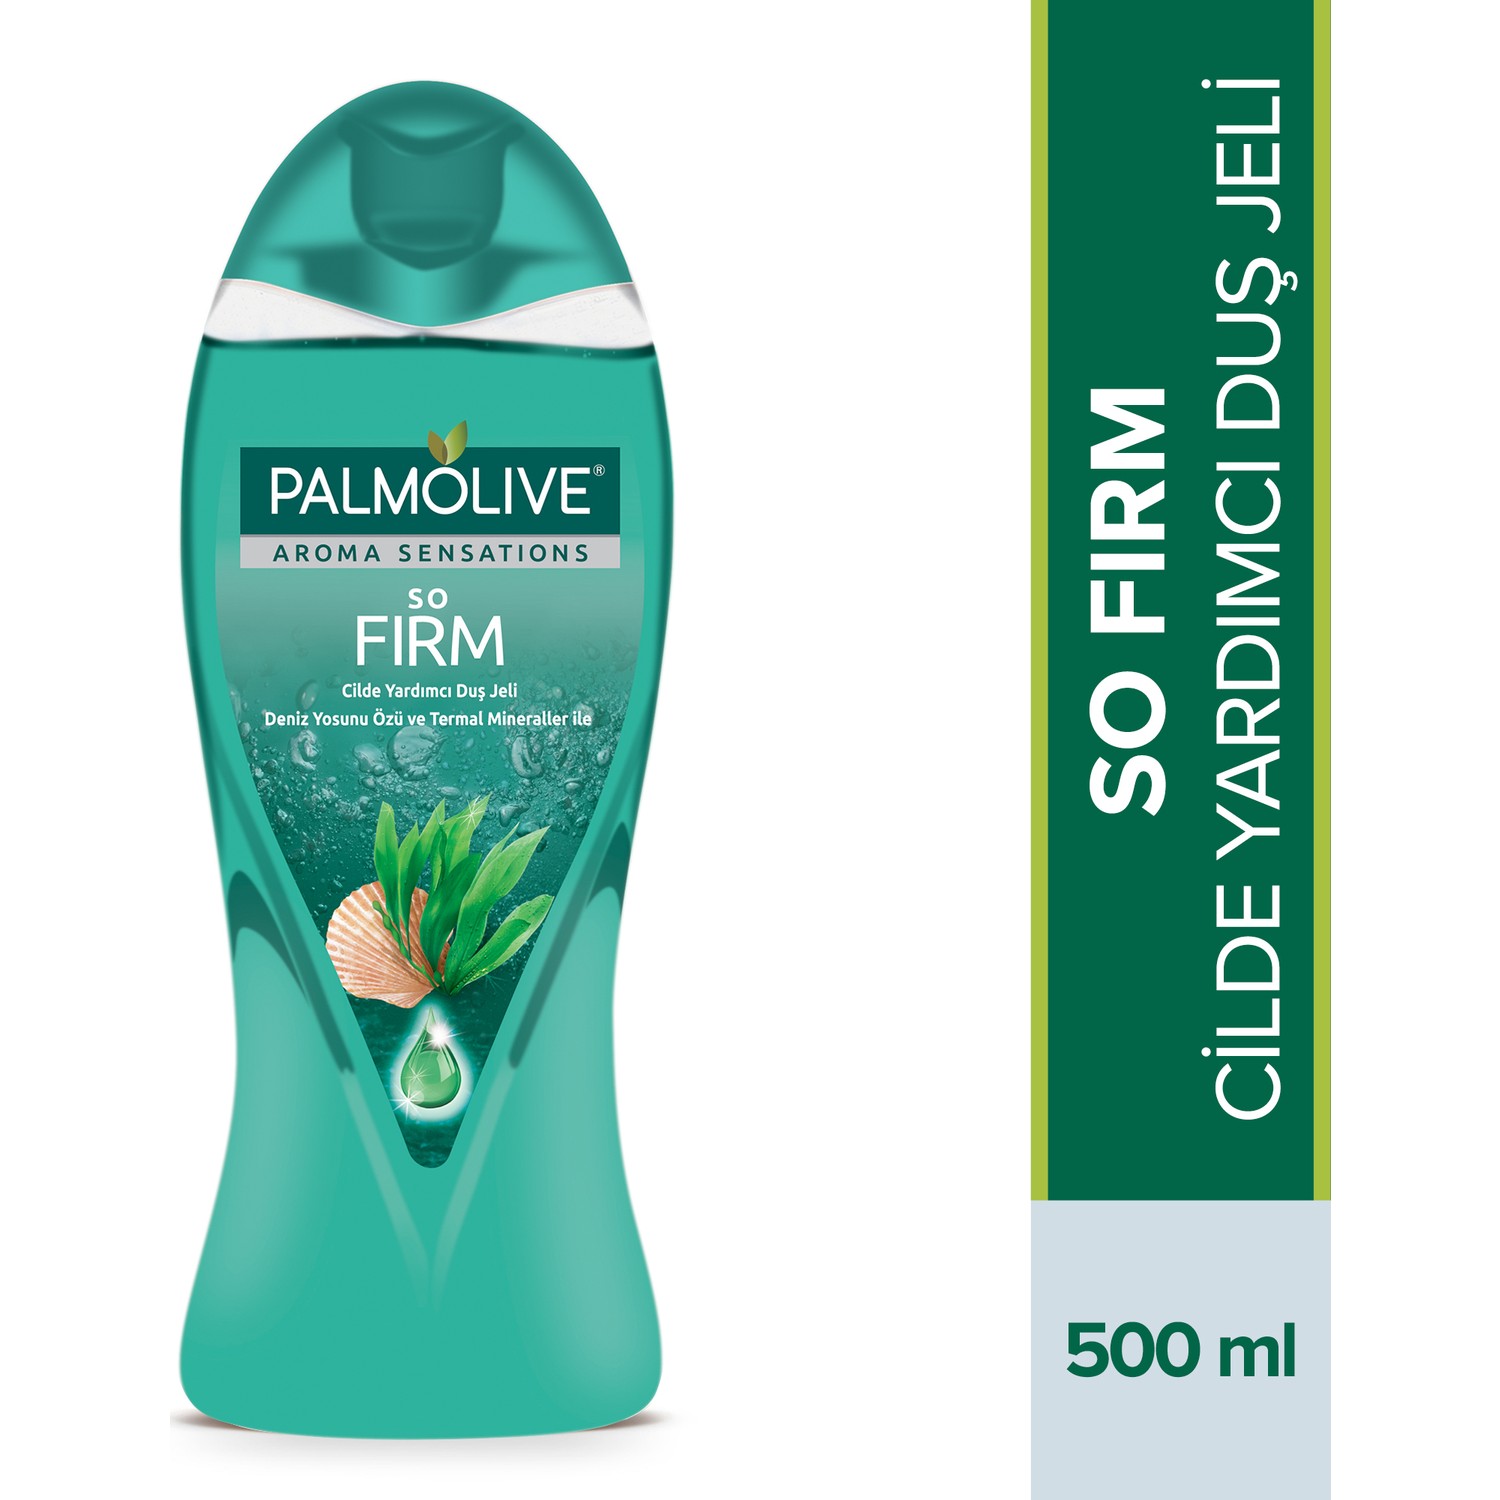 Palmolive Aroma Sensations So Firm Cilde Yardımcı Duş Jeli 500 ml